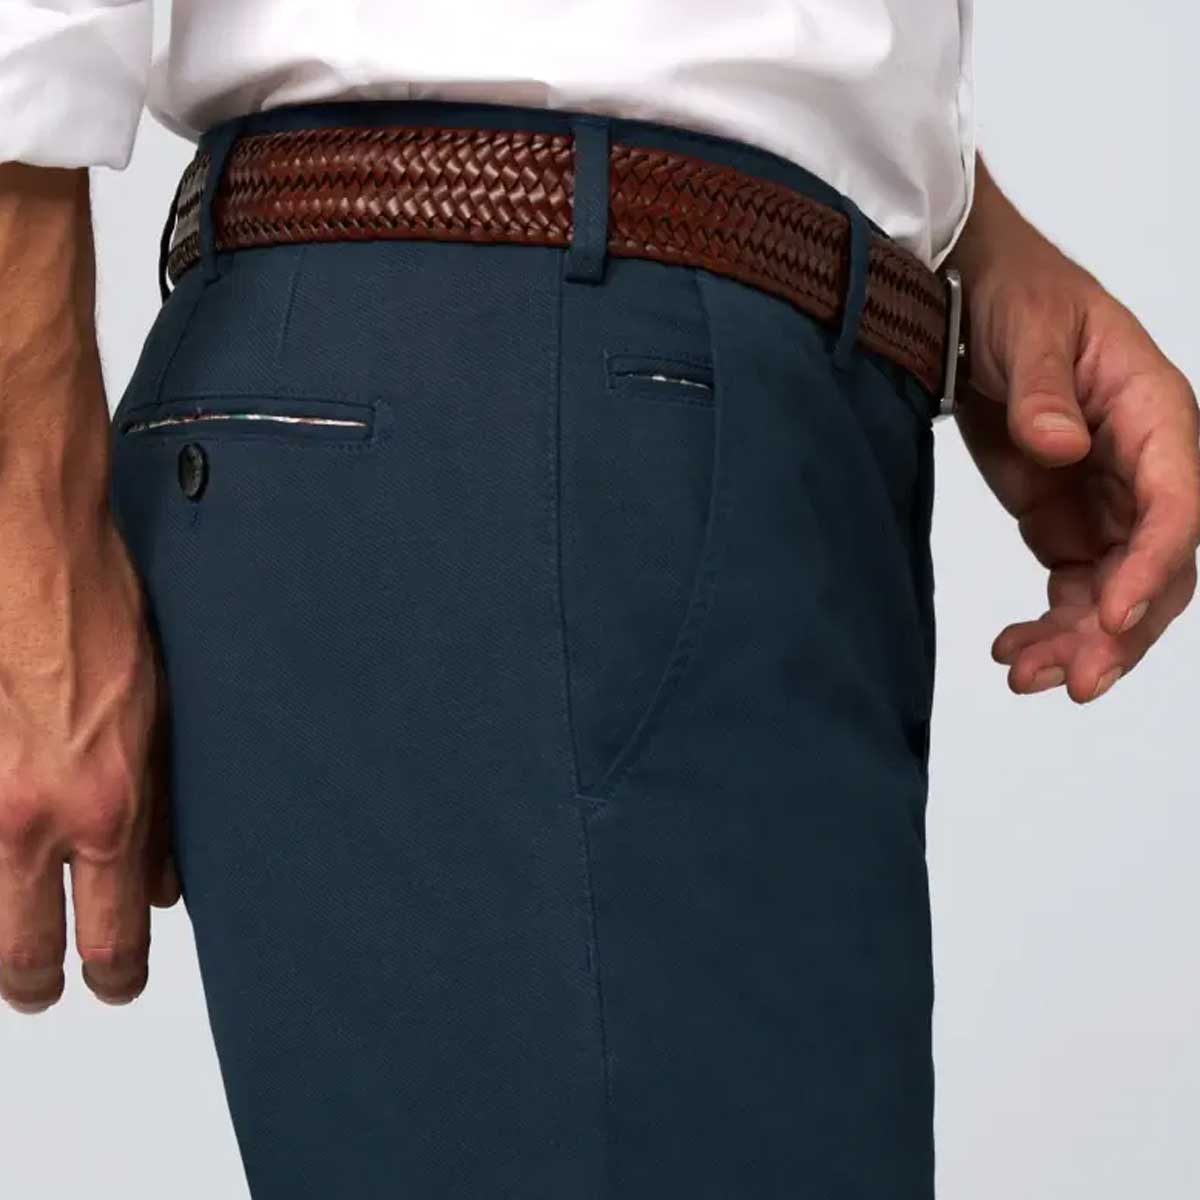 MEYER Elastic Leather Belt - Super Stretch - Brown